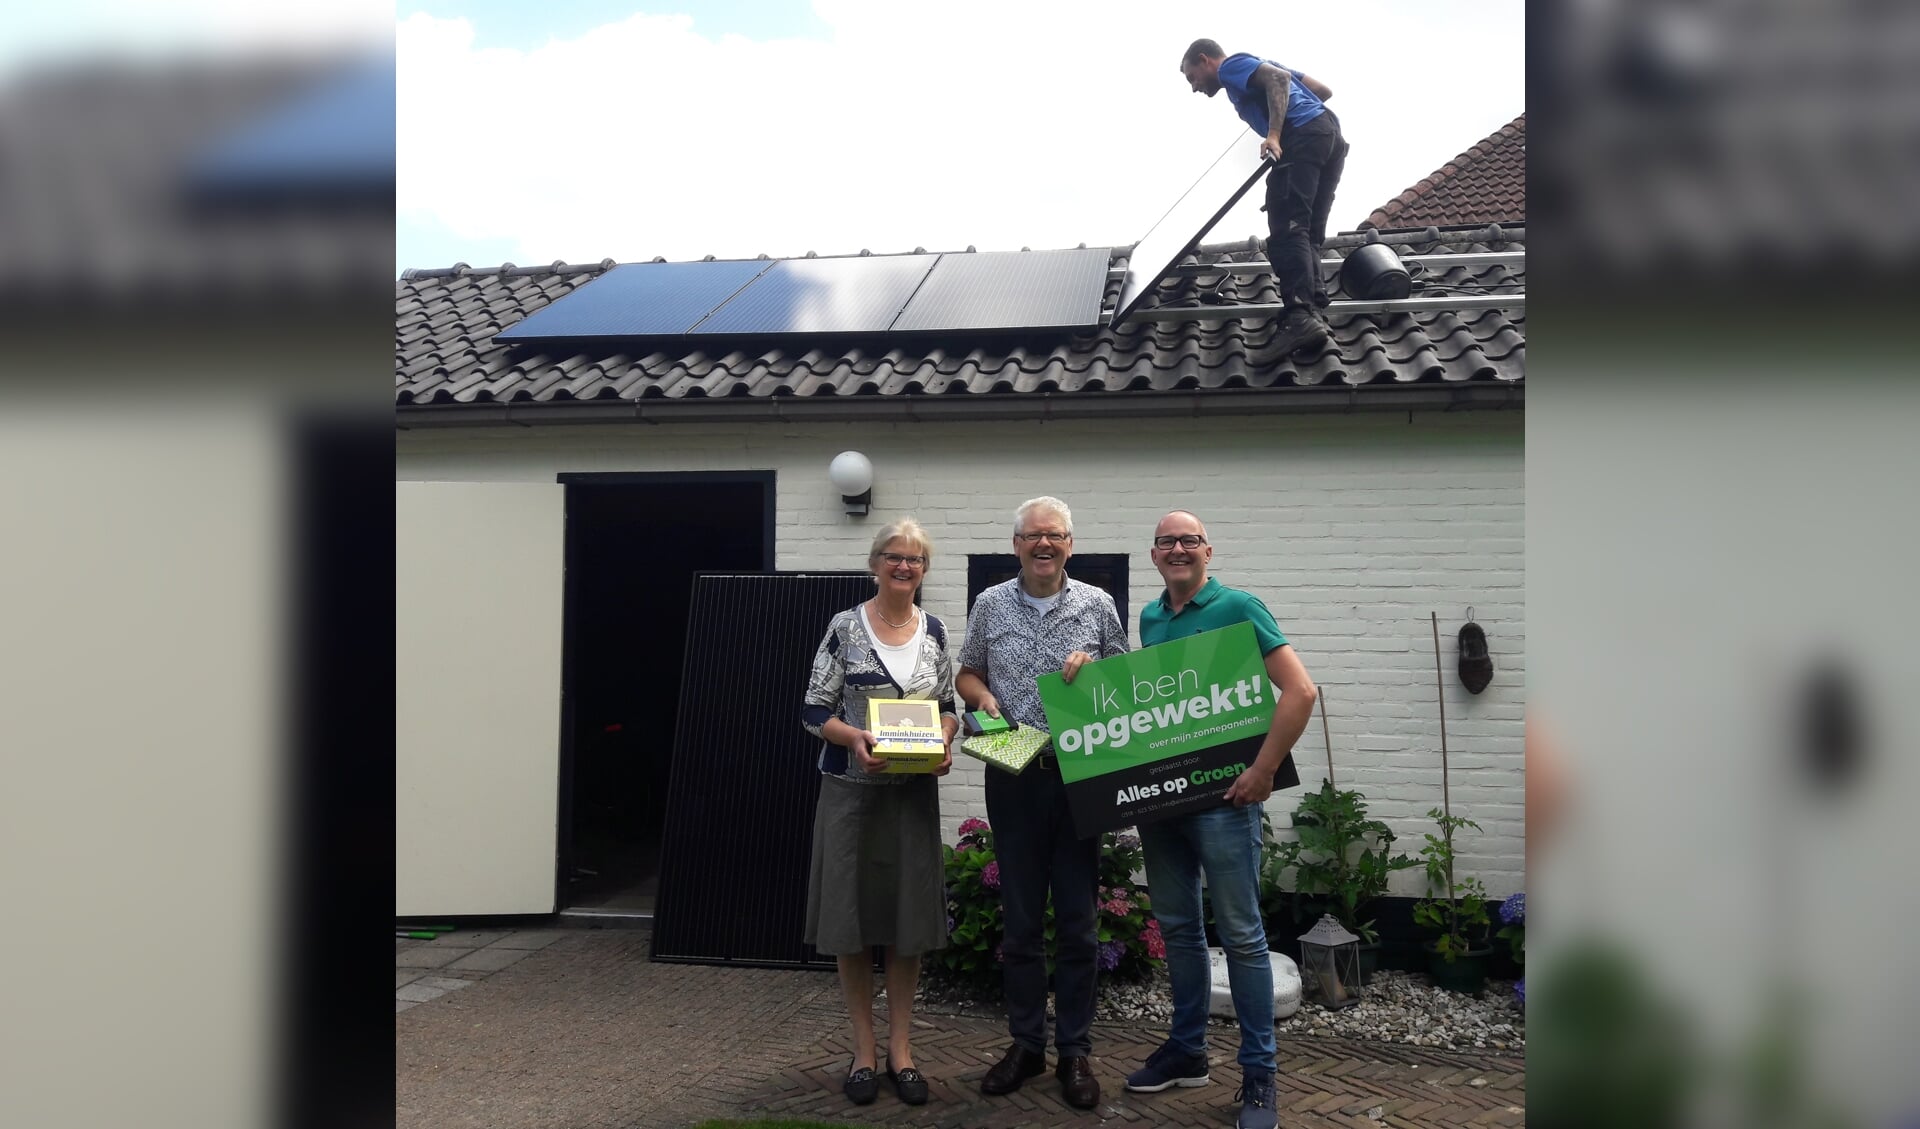 De familie Karens heeft sinds kort zonnepanelen. Ze zijn de 500e klant van Alles op Groen uit Ede.